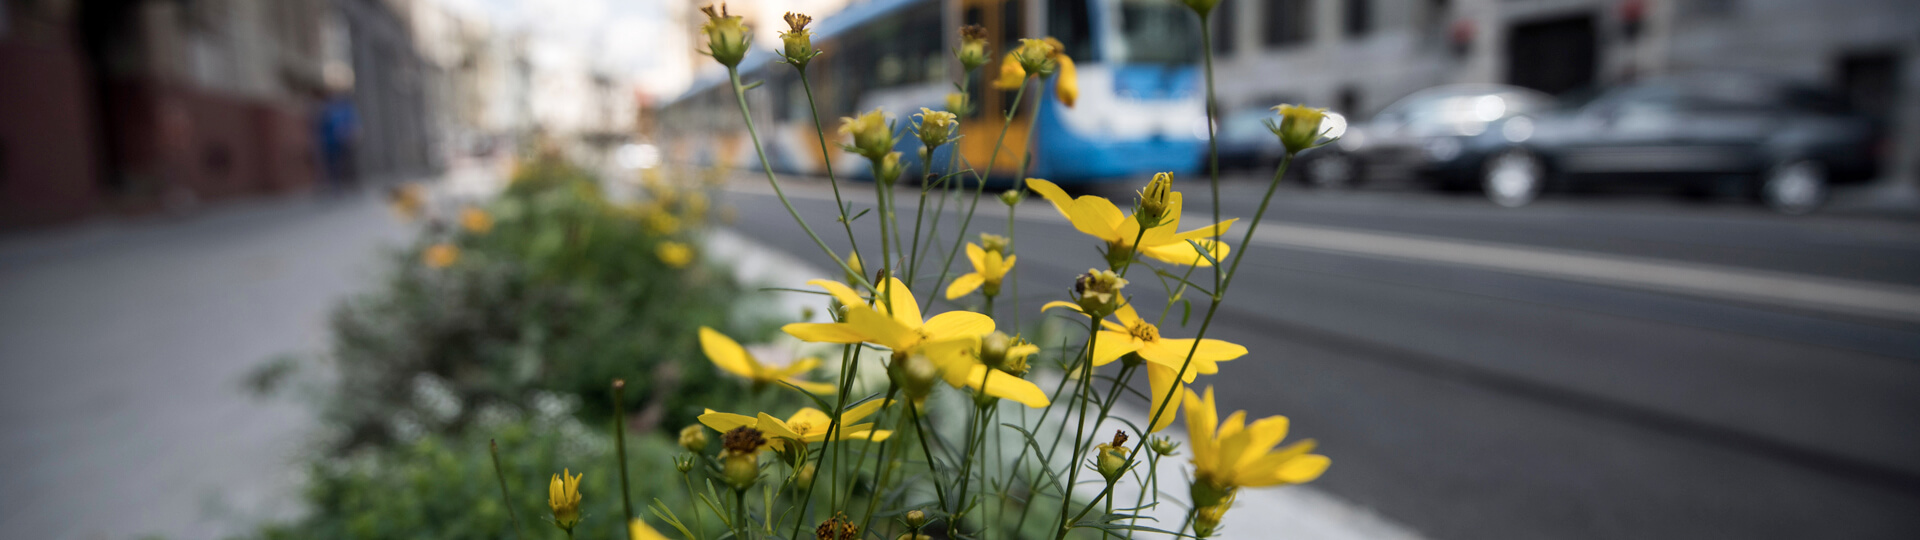 ilustrační foto - rozkvetlé jarní kvítí v centru města a v pozadí tramvaj DPO